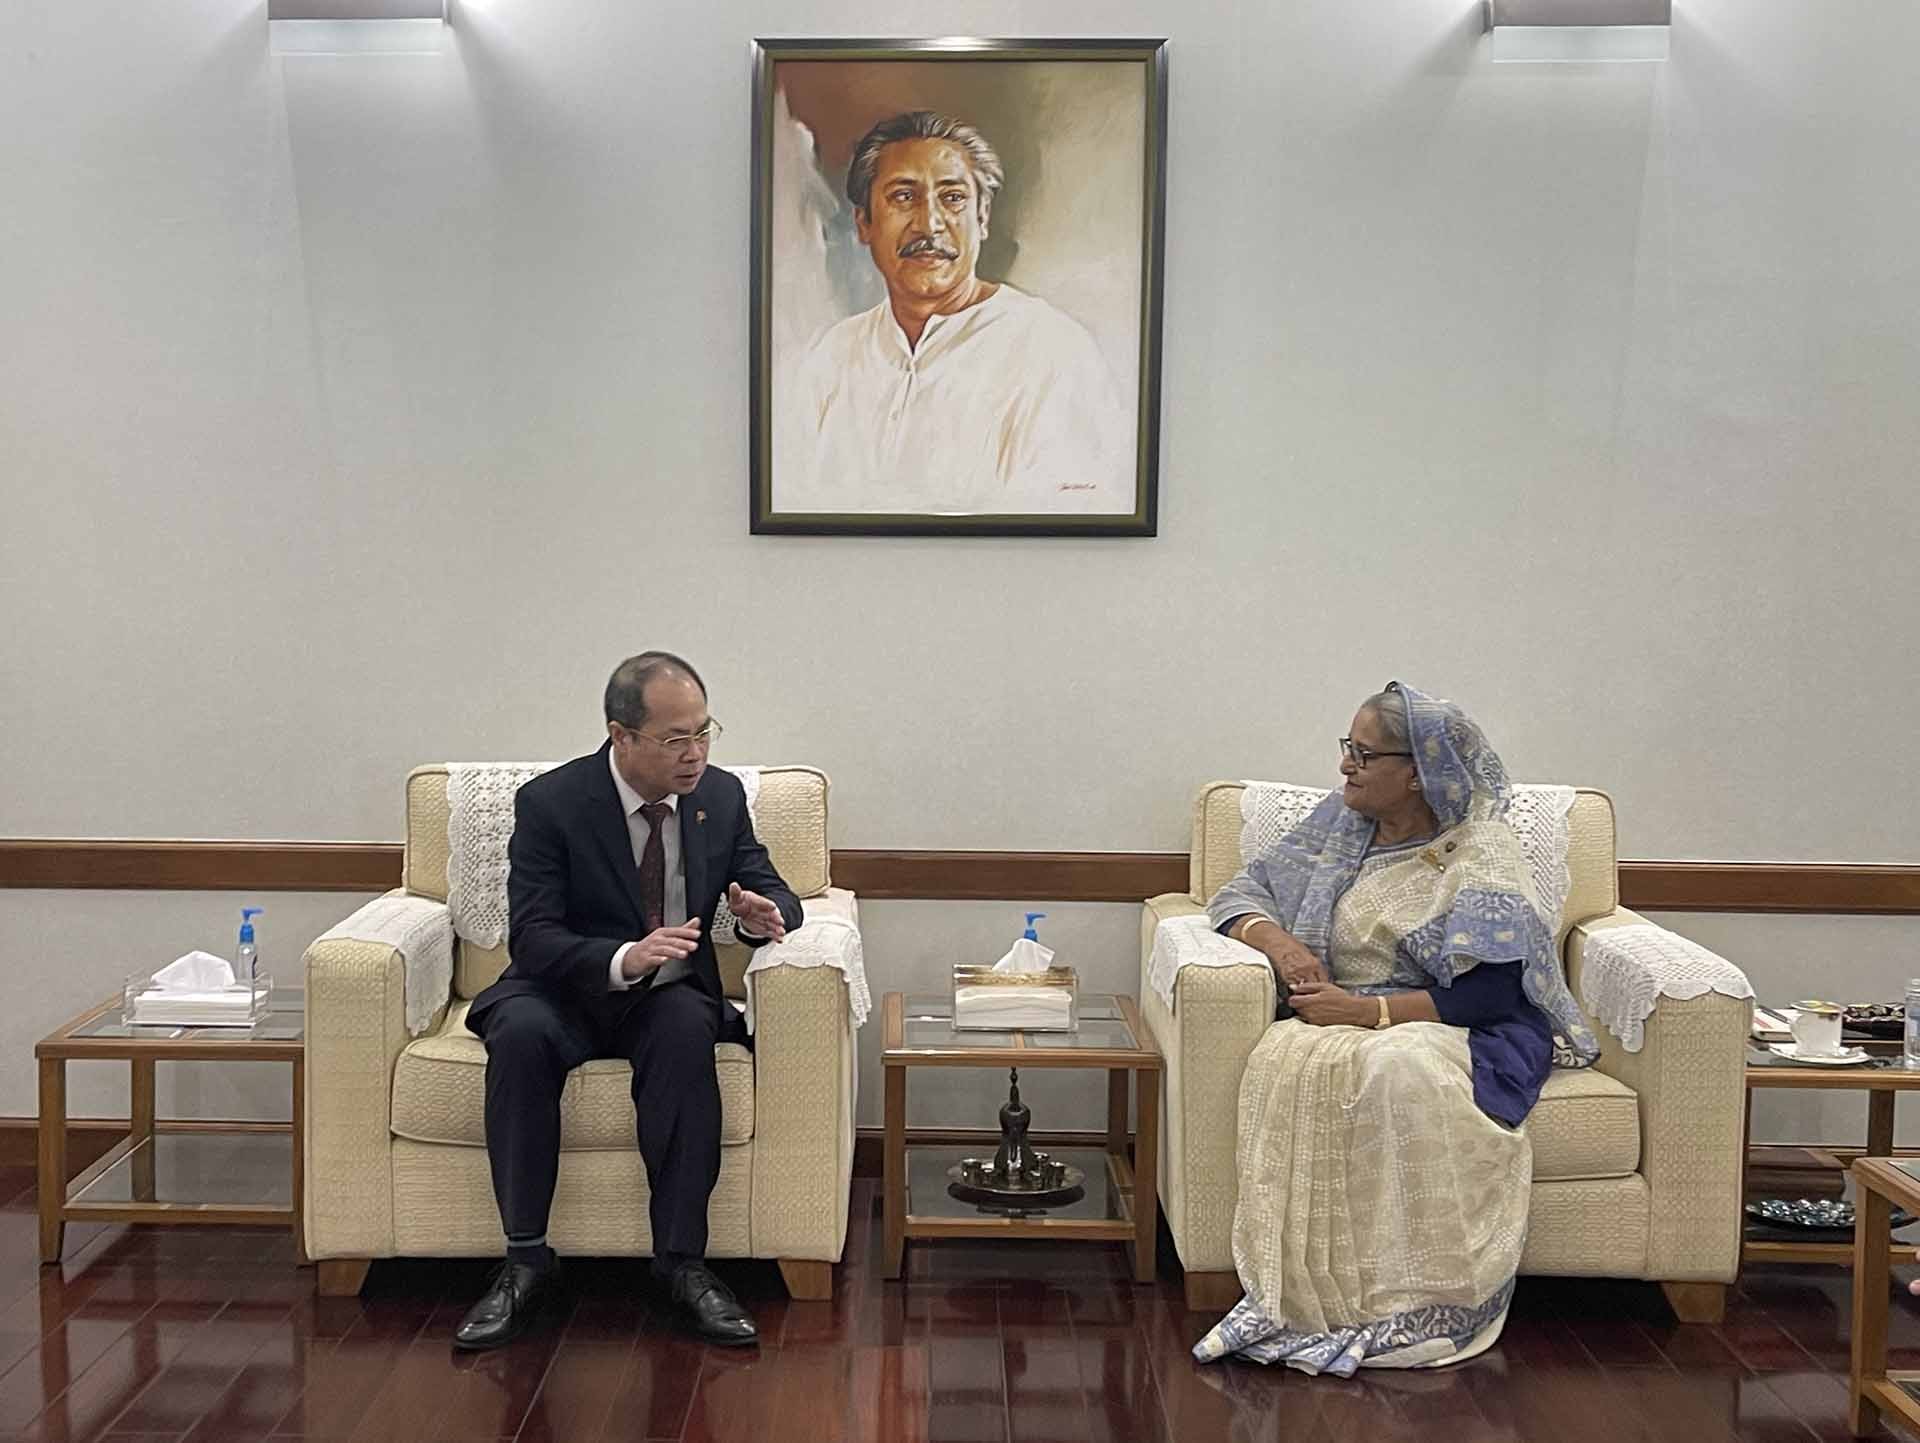 Đại sứ Nguyễn Mạnh Cường tin tưởng rằng, dưới sự lãnh đạo của Thủ tướng Sheikh Hasina, Chính phủ Bangladesh sẽ tiếp tục đạt được nhiều thành tựu to lớn